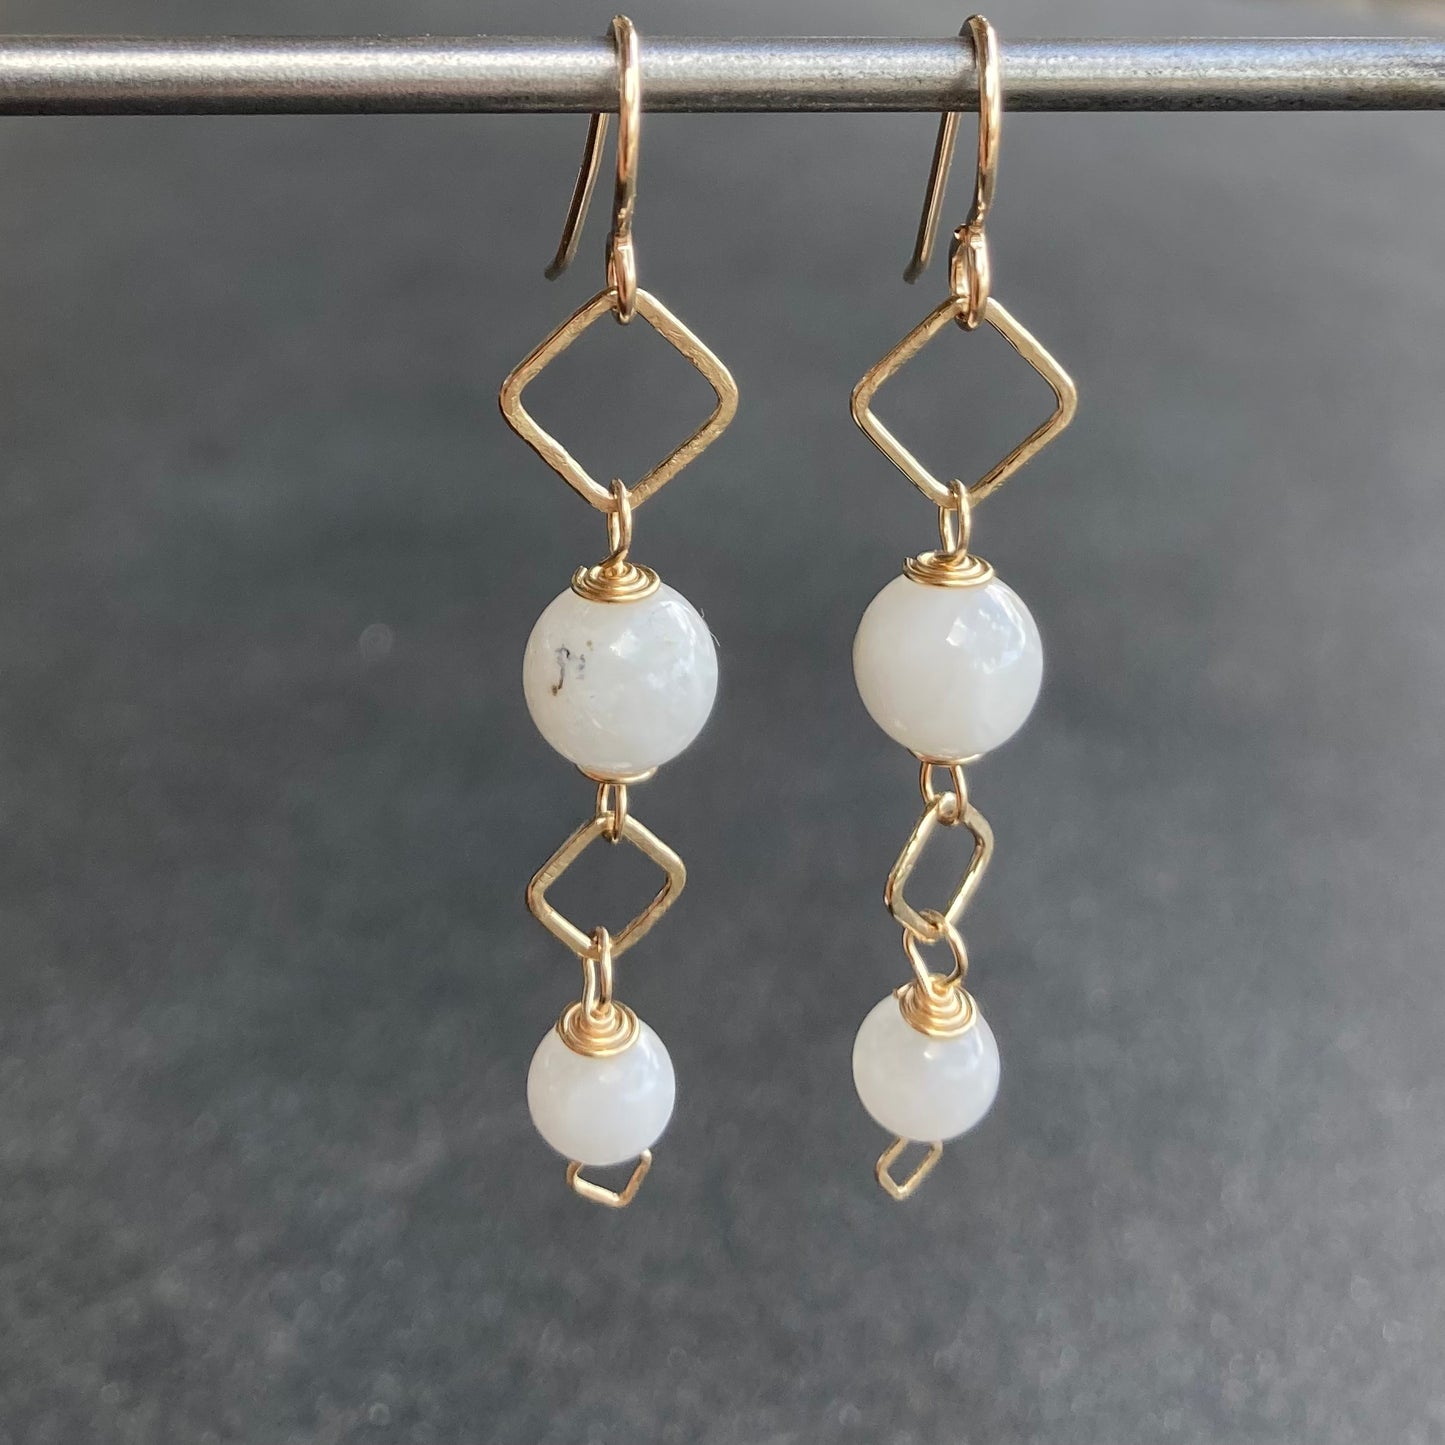 White Moonstone & 14k Gold Square Link Earrings